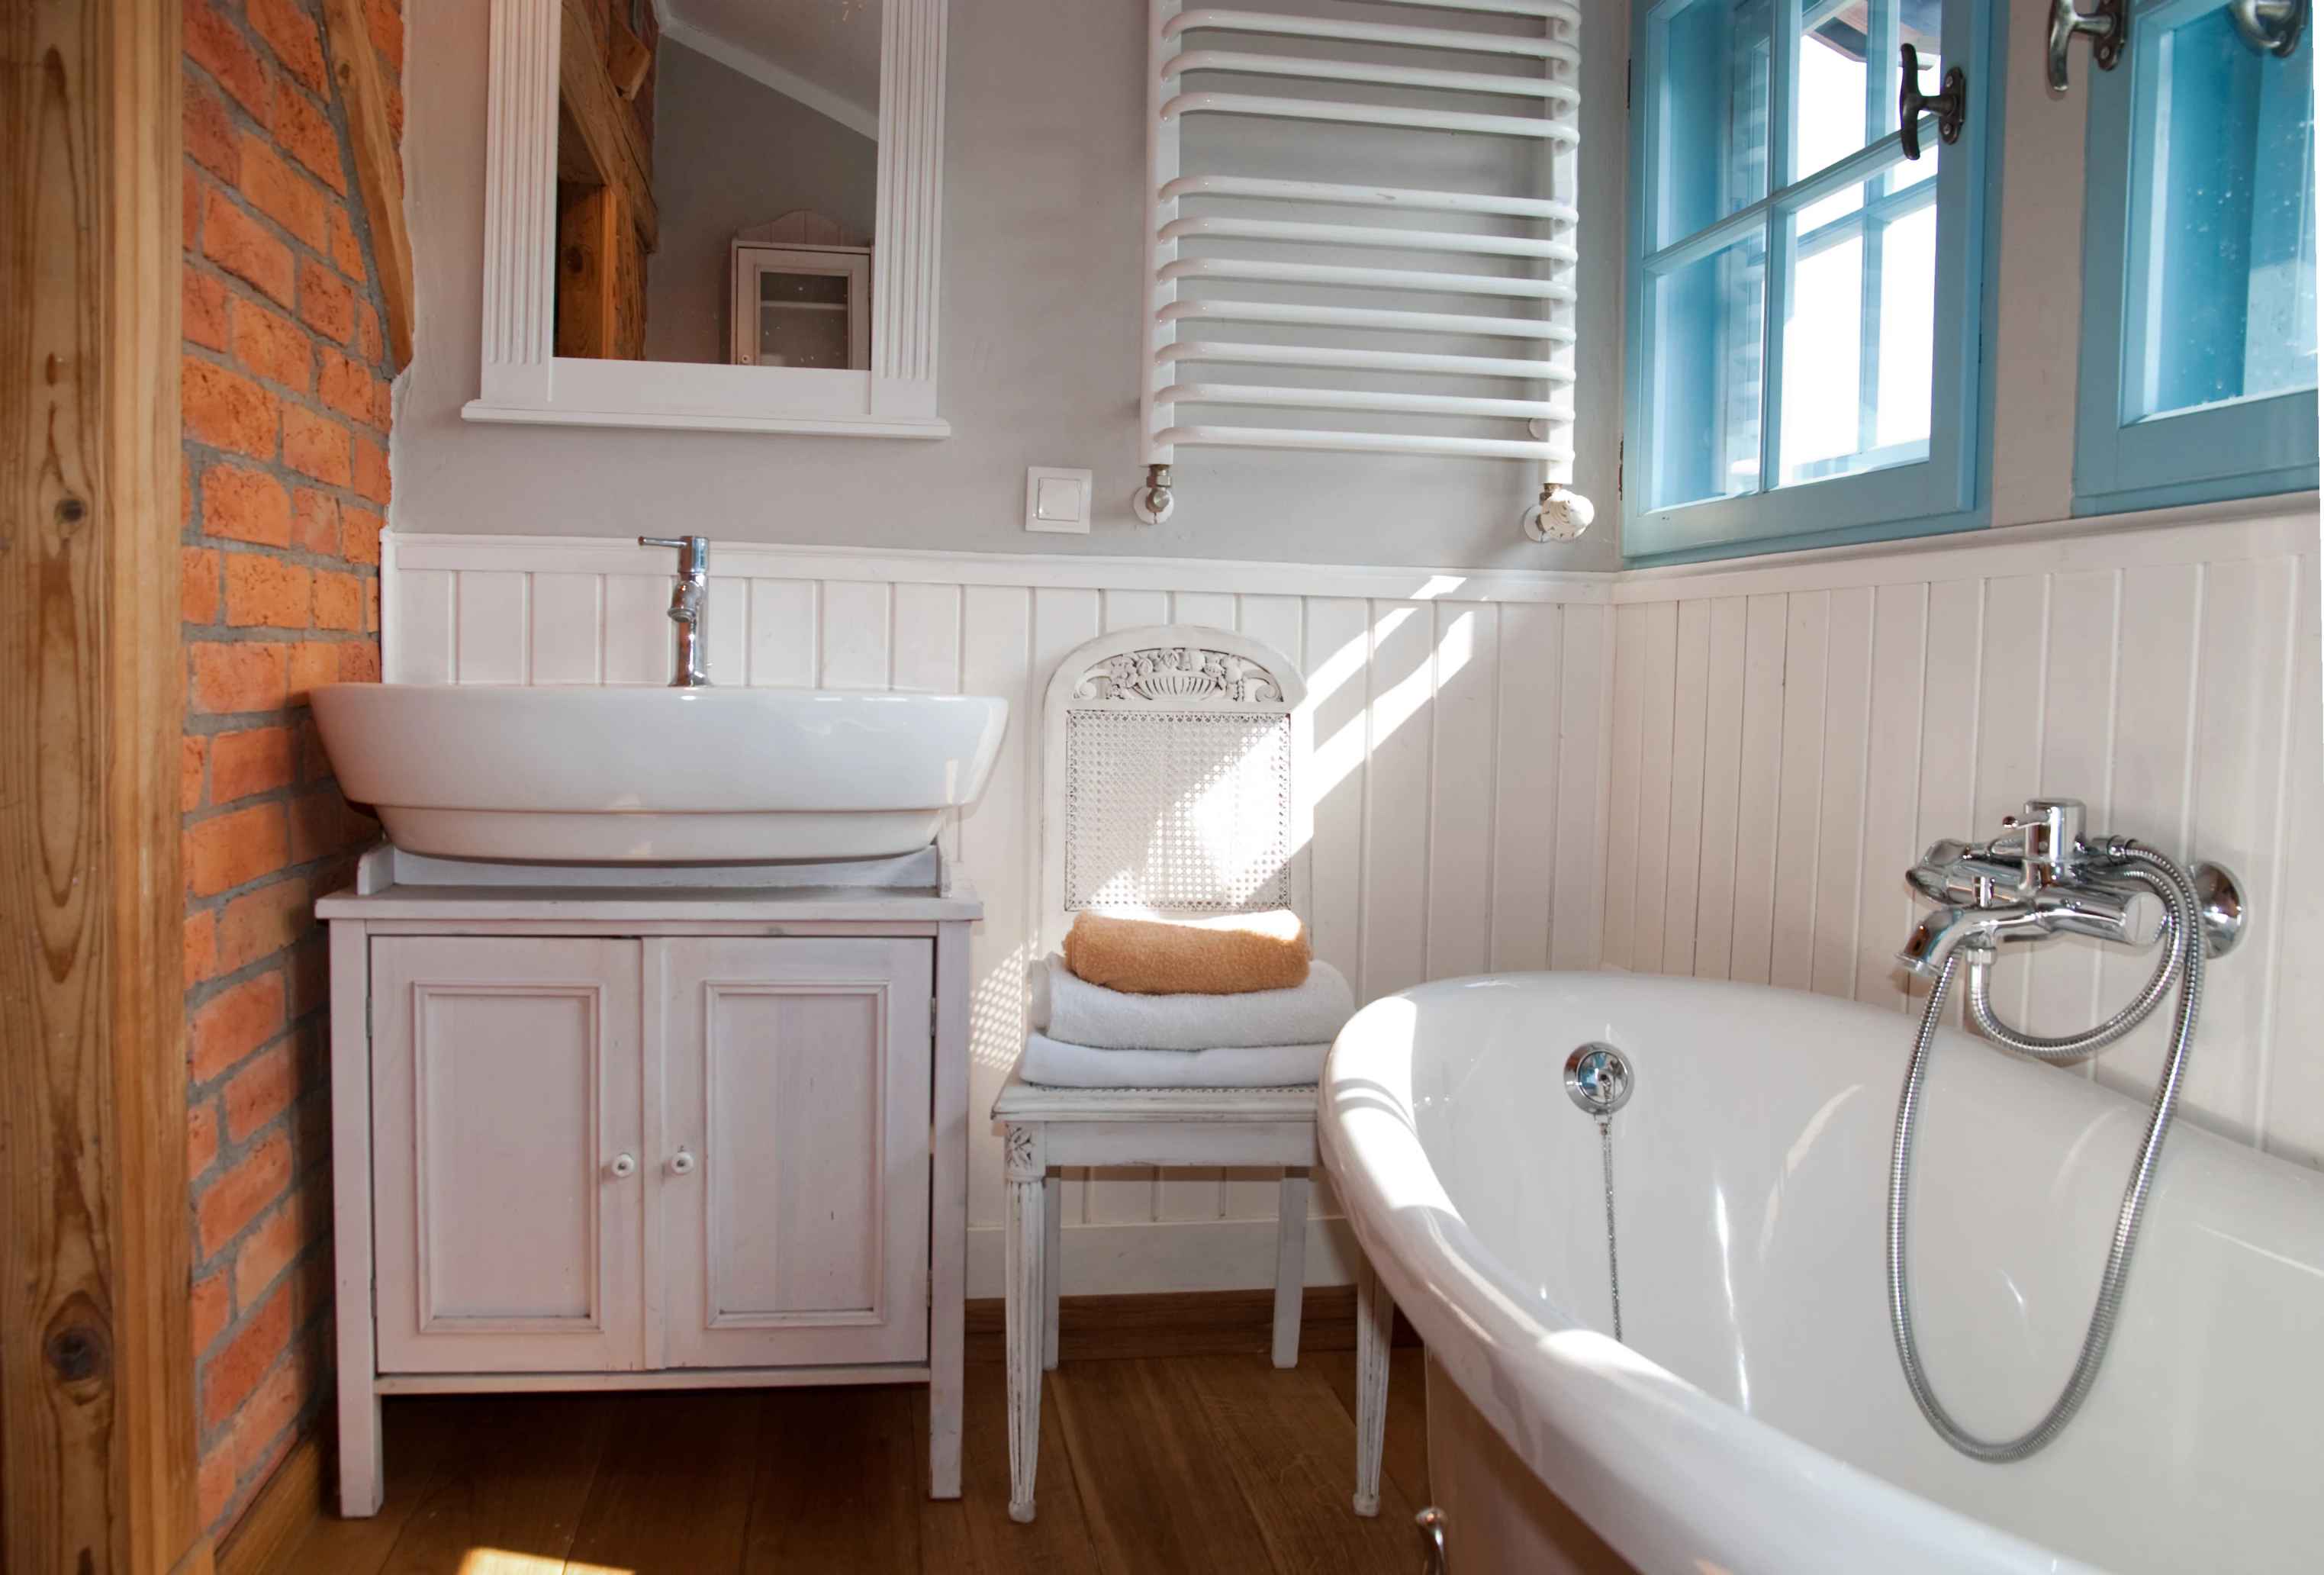 03-Erhalten Sie einen rustikalen Badezimmer-Look mit recycelten Wetterbrettern